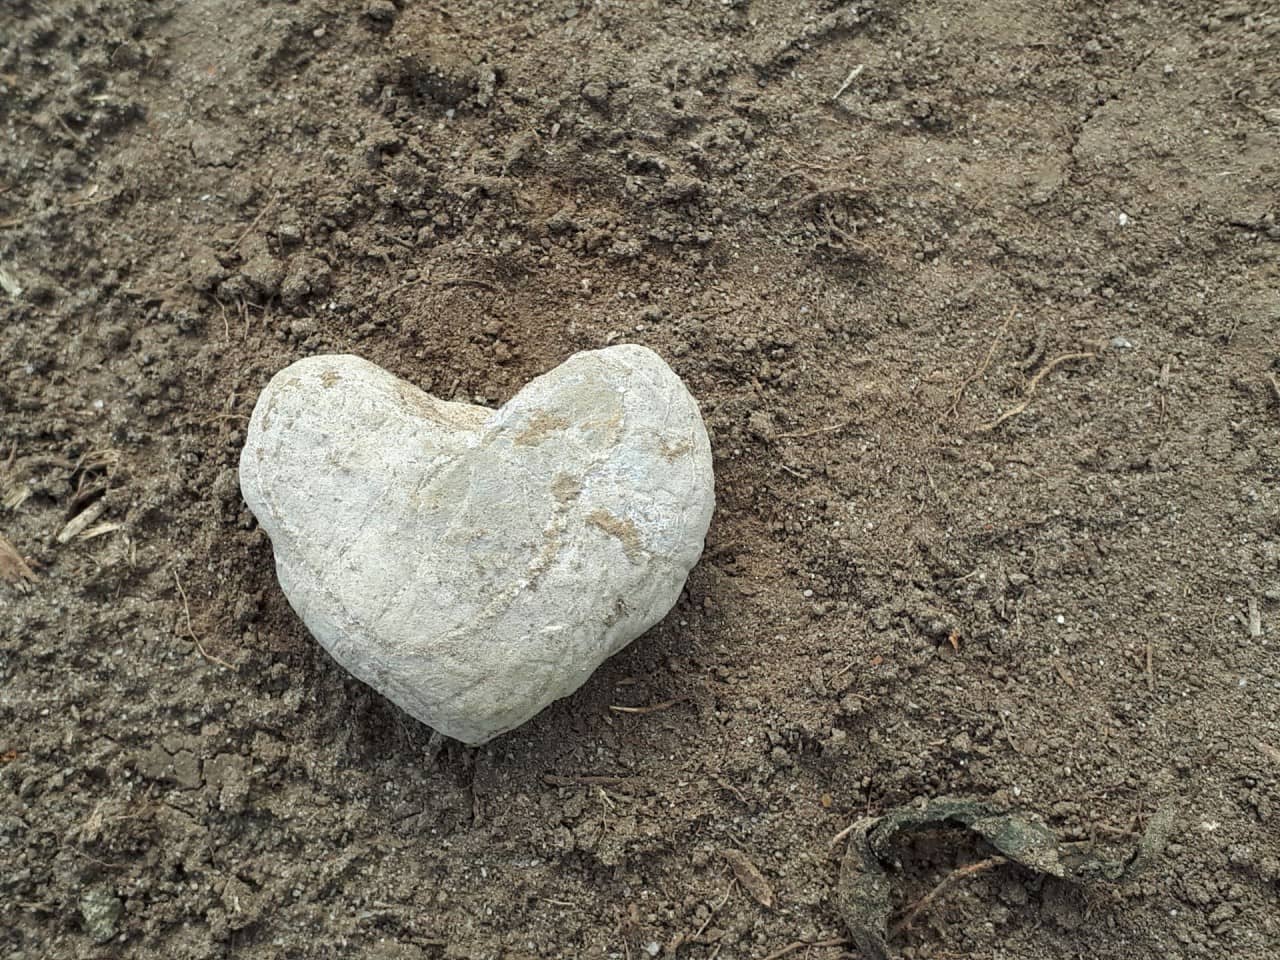 Stein in Form einews Herzens.